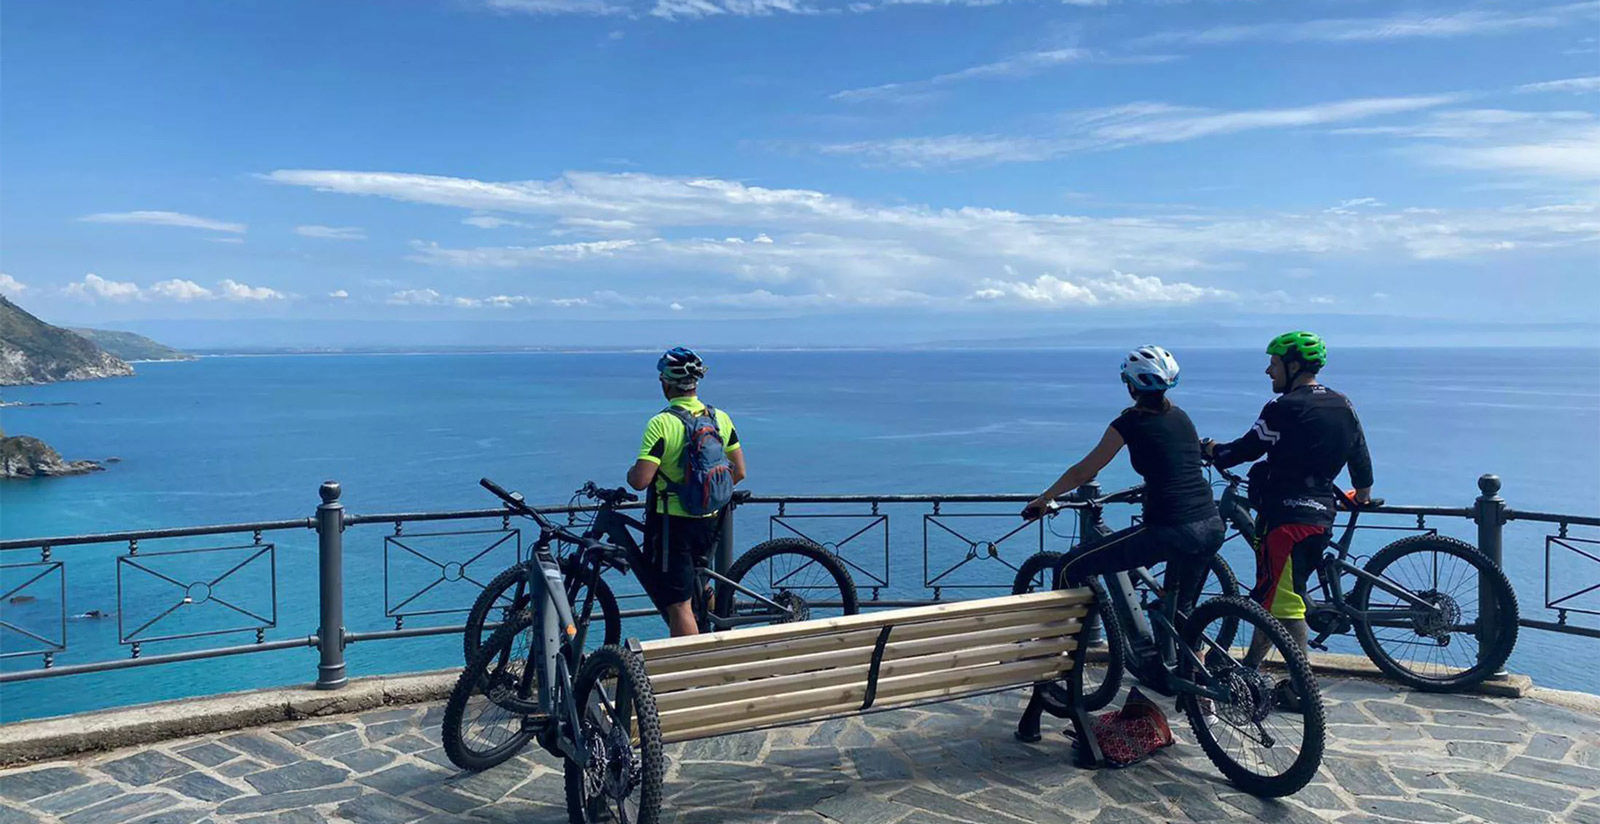 Capovaticano Resort - E-bikes and excursions 18